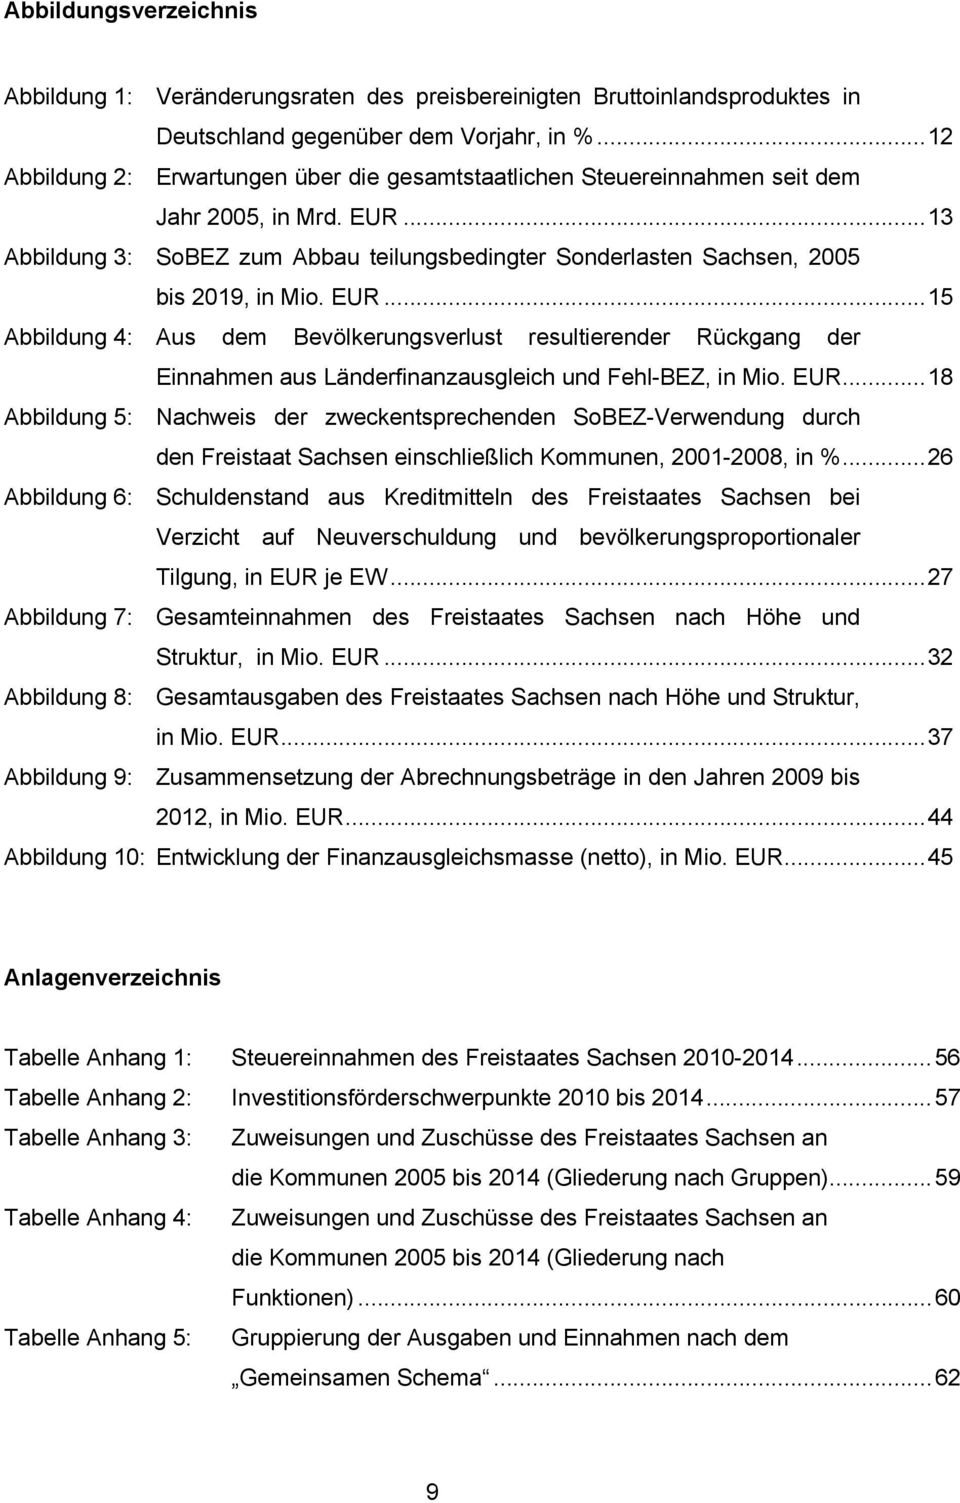 ..13 SoBEZ zum Abbau teilungsbedingter Sonderlasten Sachsen, 2005 bis 2019, in Mio. EUR.